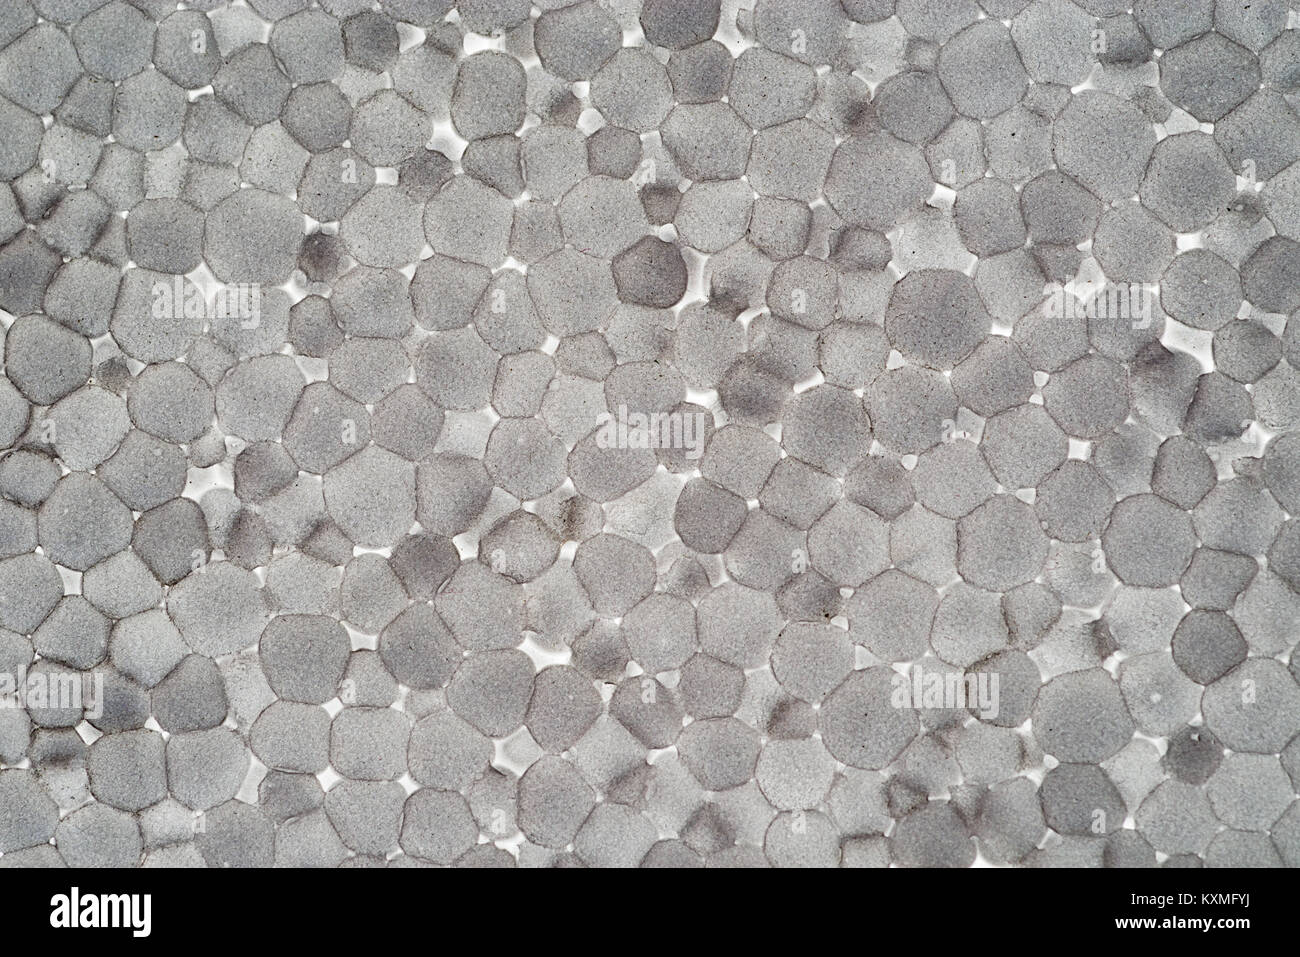 Hintergrundbeleuchtung aus geschäumtem Polystyrol Hartschaum Hintergrund Textur makro Bild Stockfoto